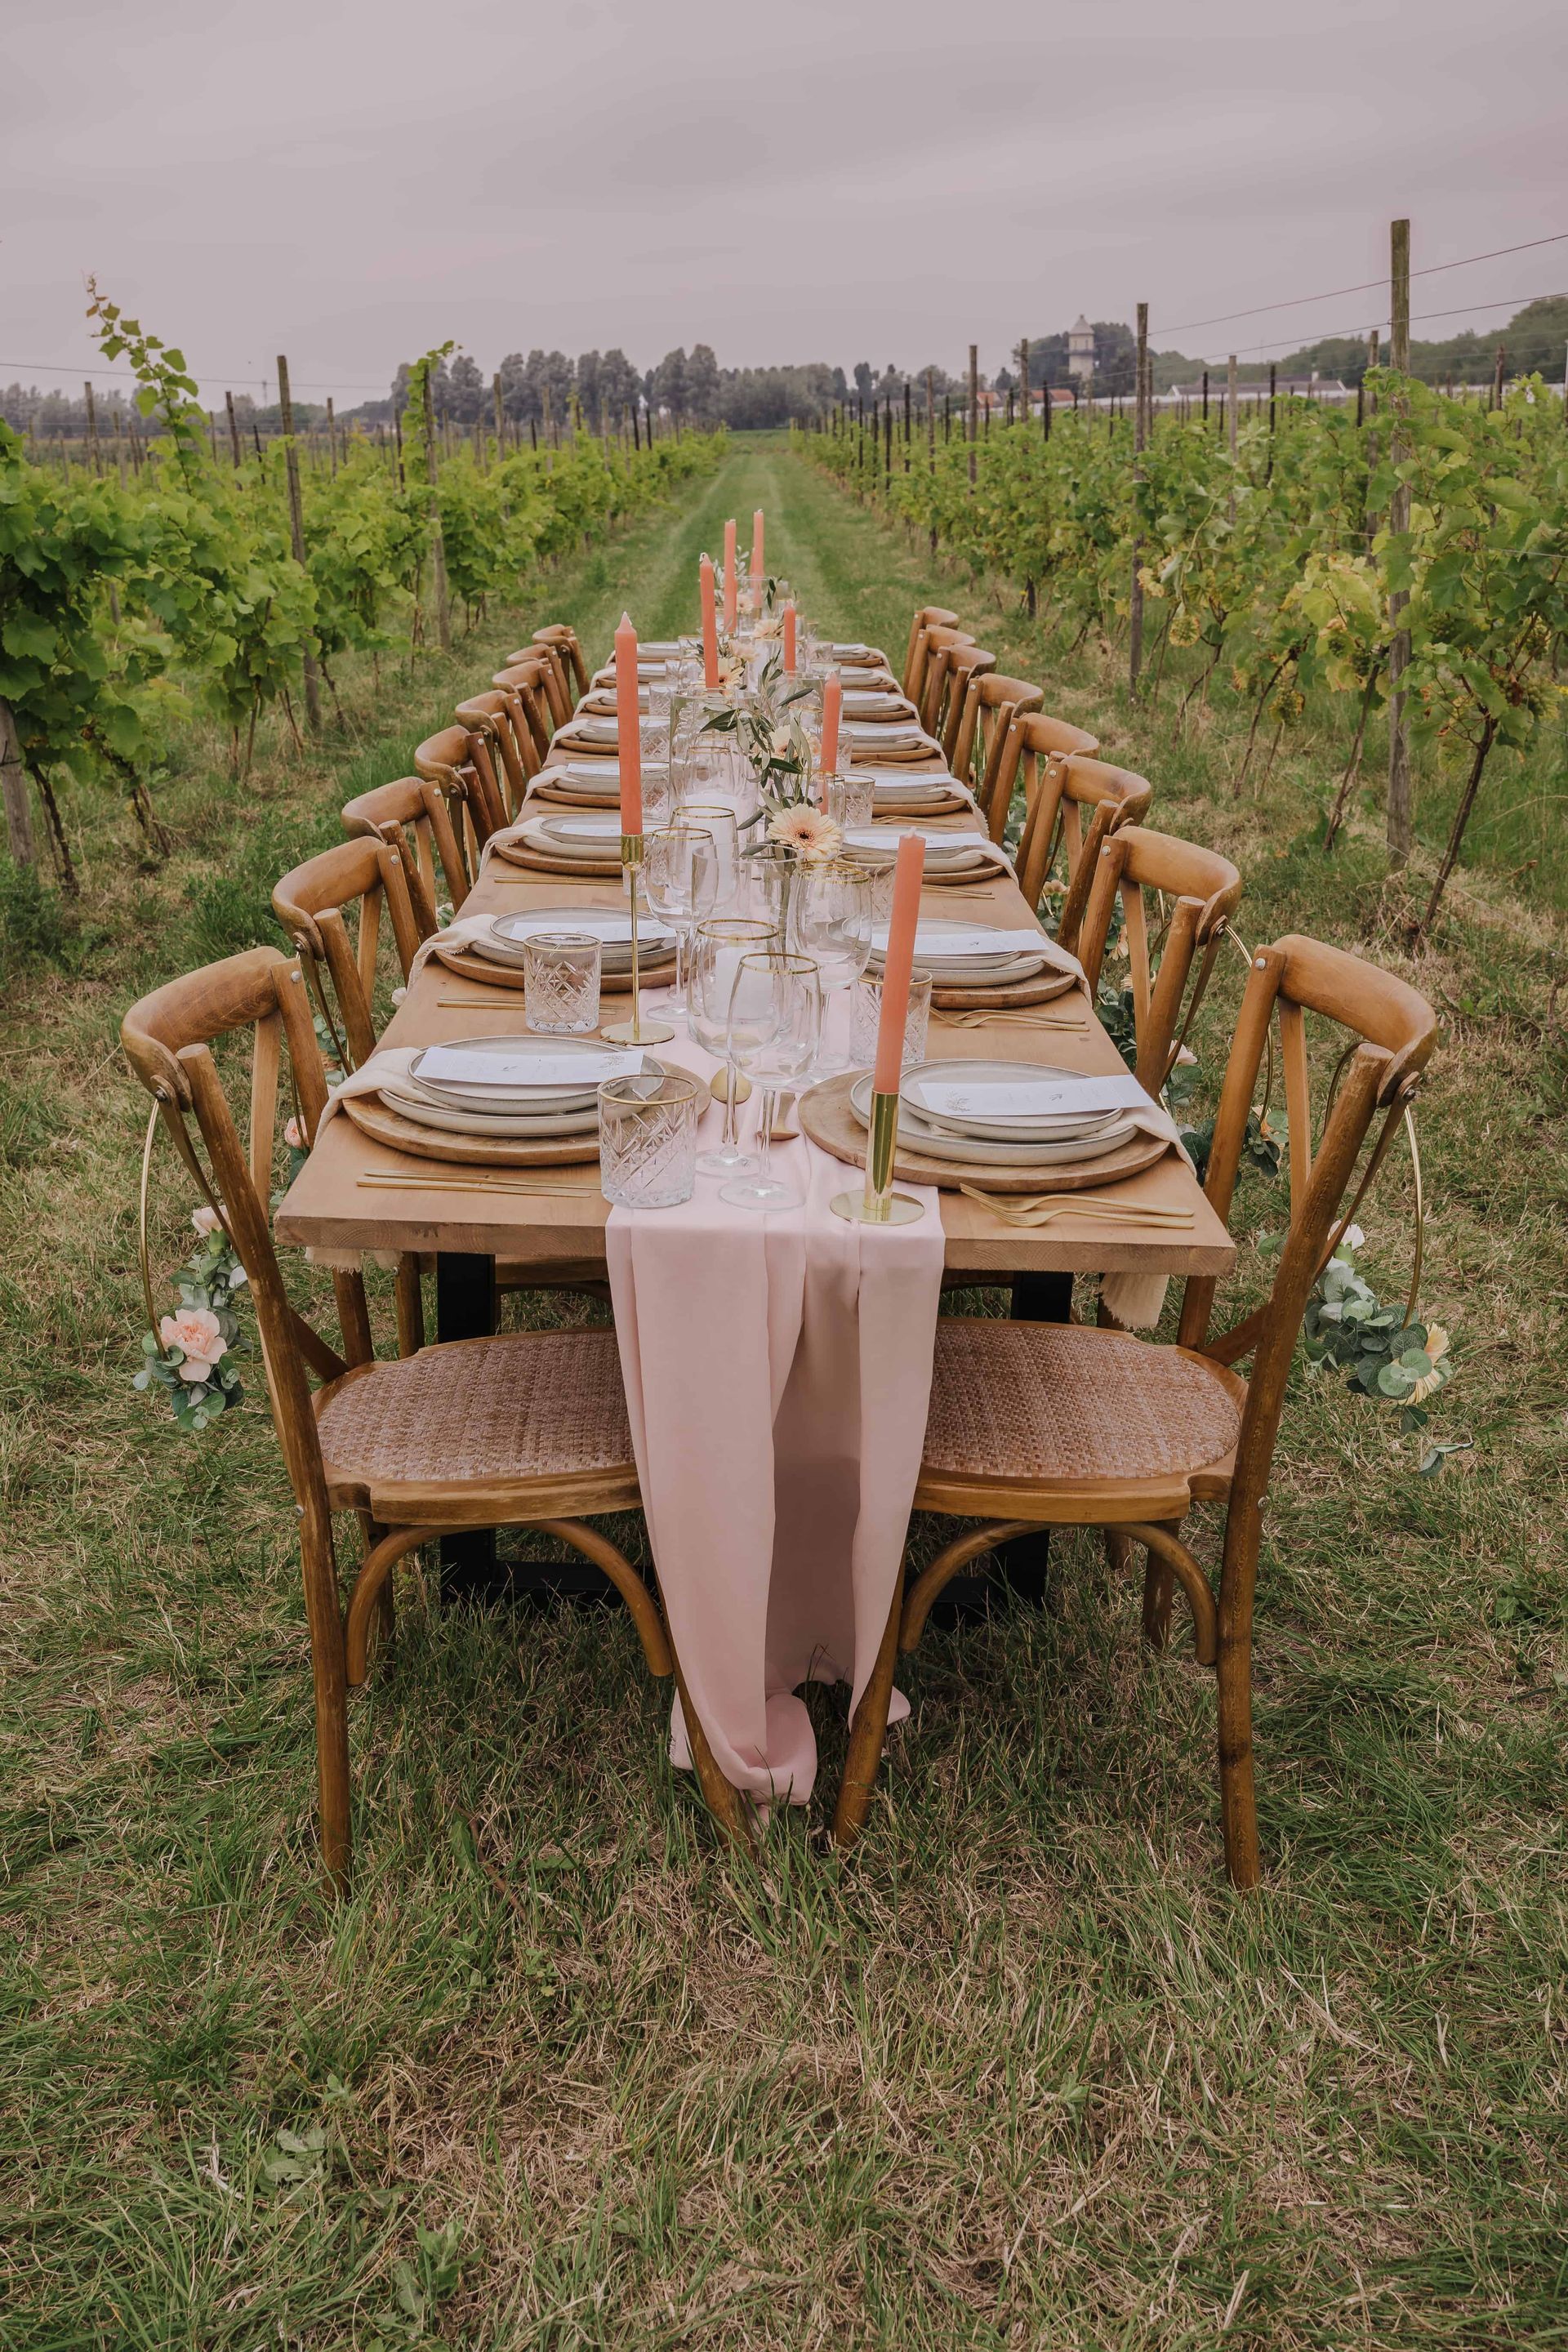 Diner tafel Italiaanse bruiloft wijngaard Smaak van Bilderhof Dordrecht Zuid-Holland
Celebrate your moment | wedding & event planner